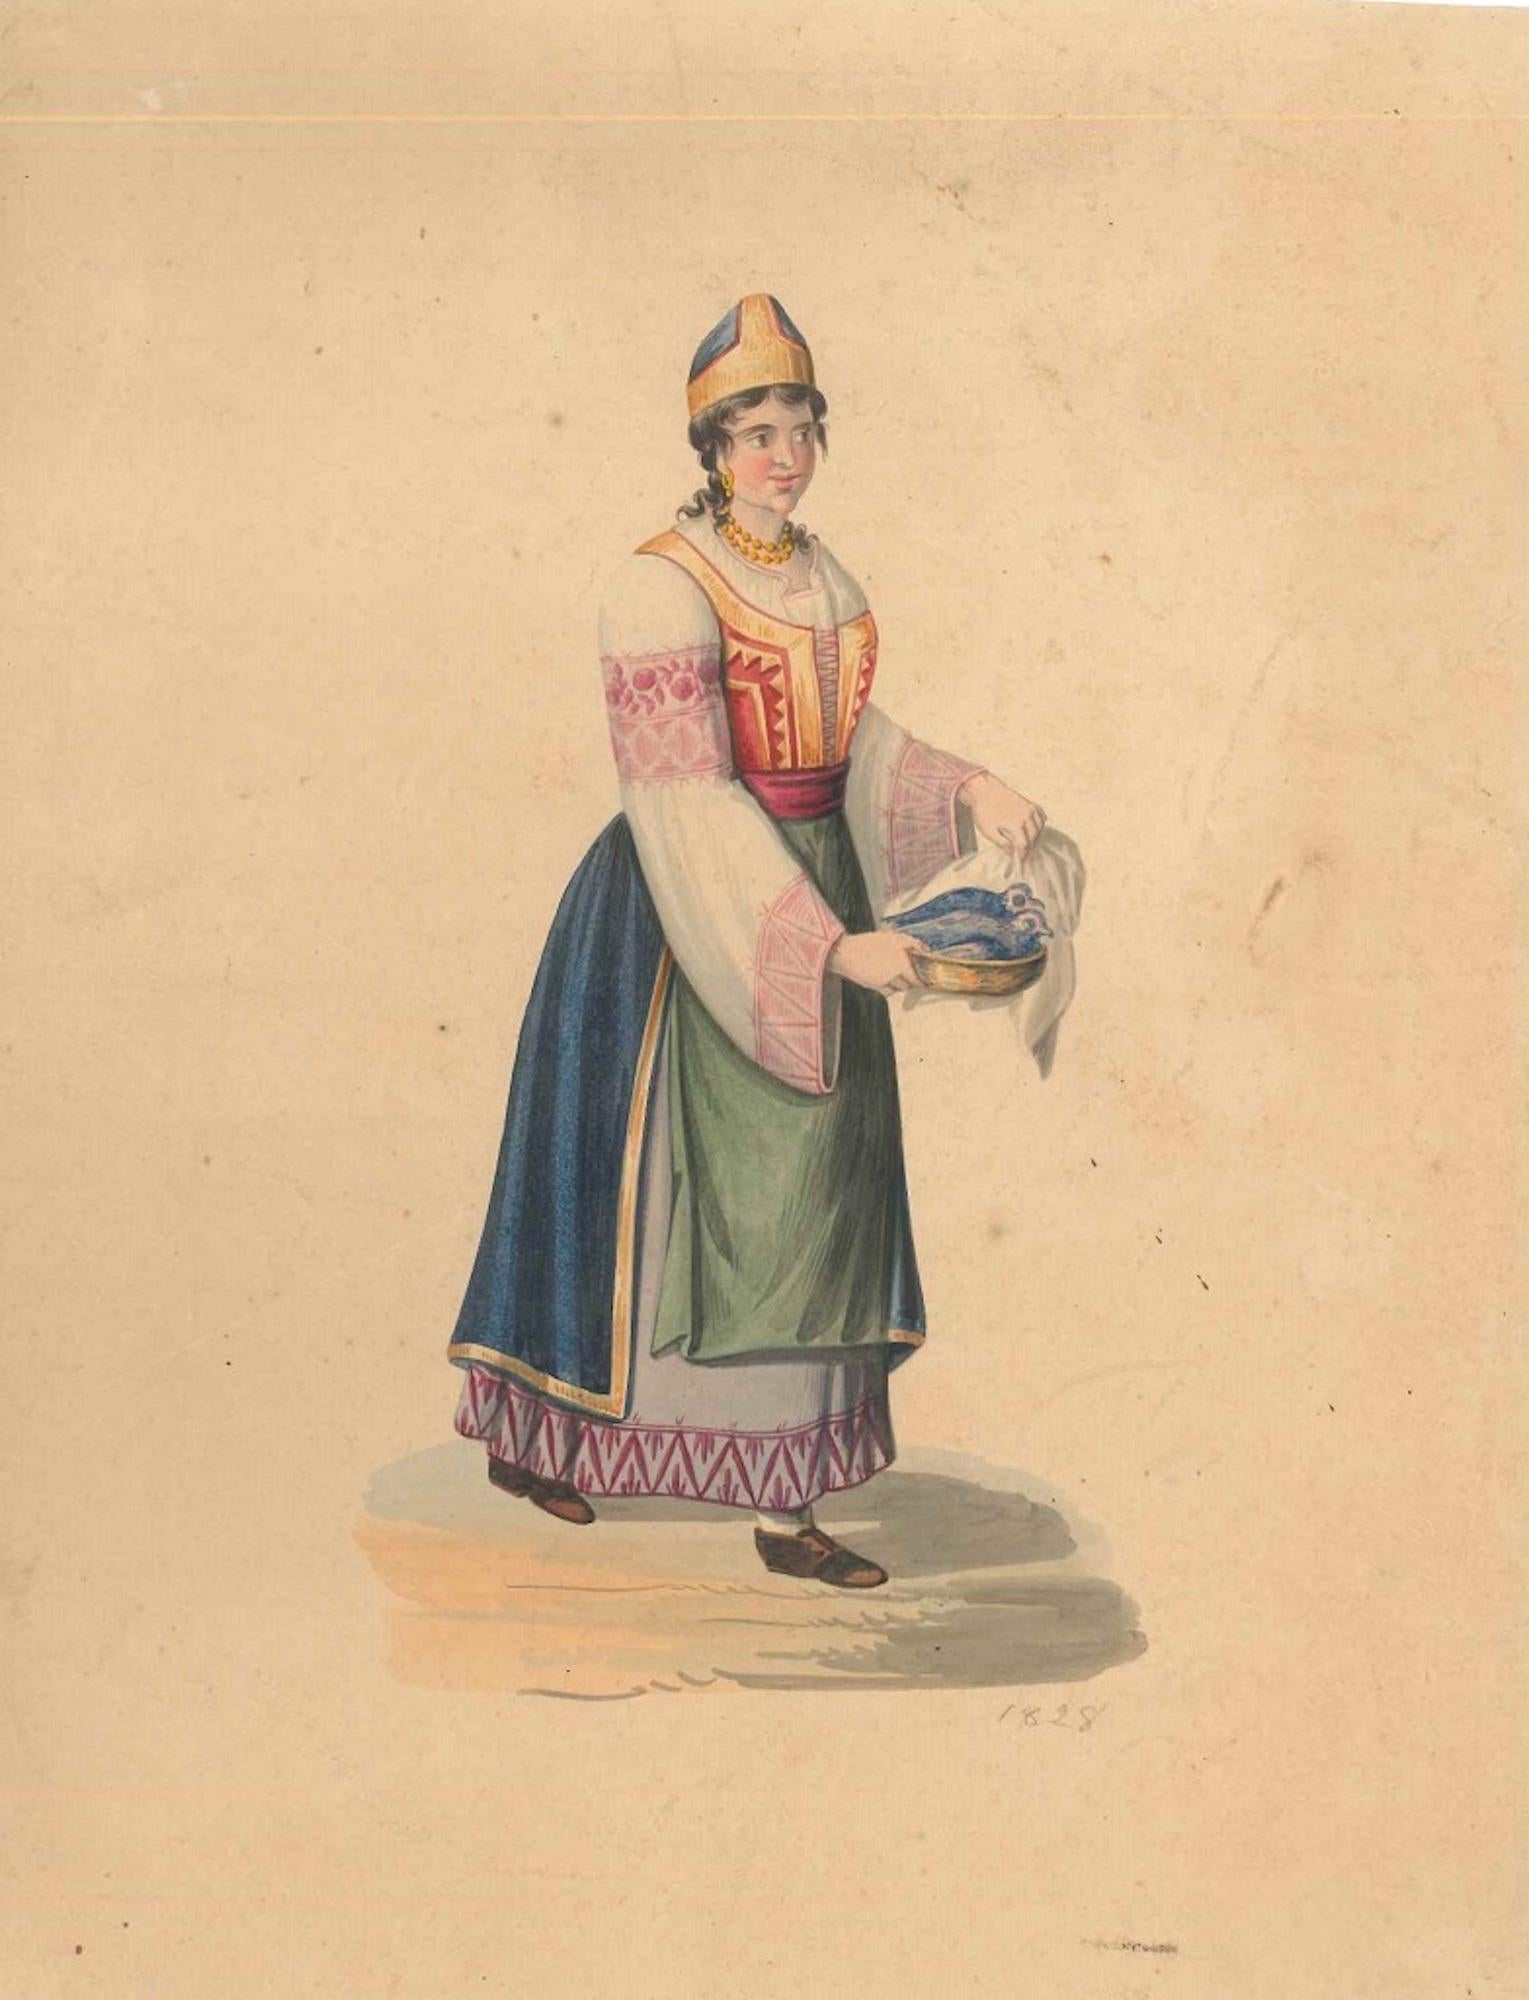 Michela De Vito Figurative Art - Woman in Typical Costumes  - Watercolor by M. De Vito - 1820 ca.